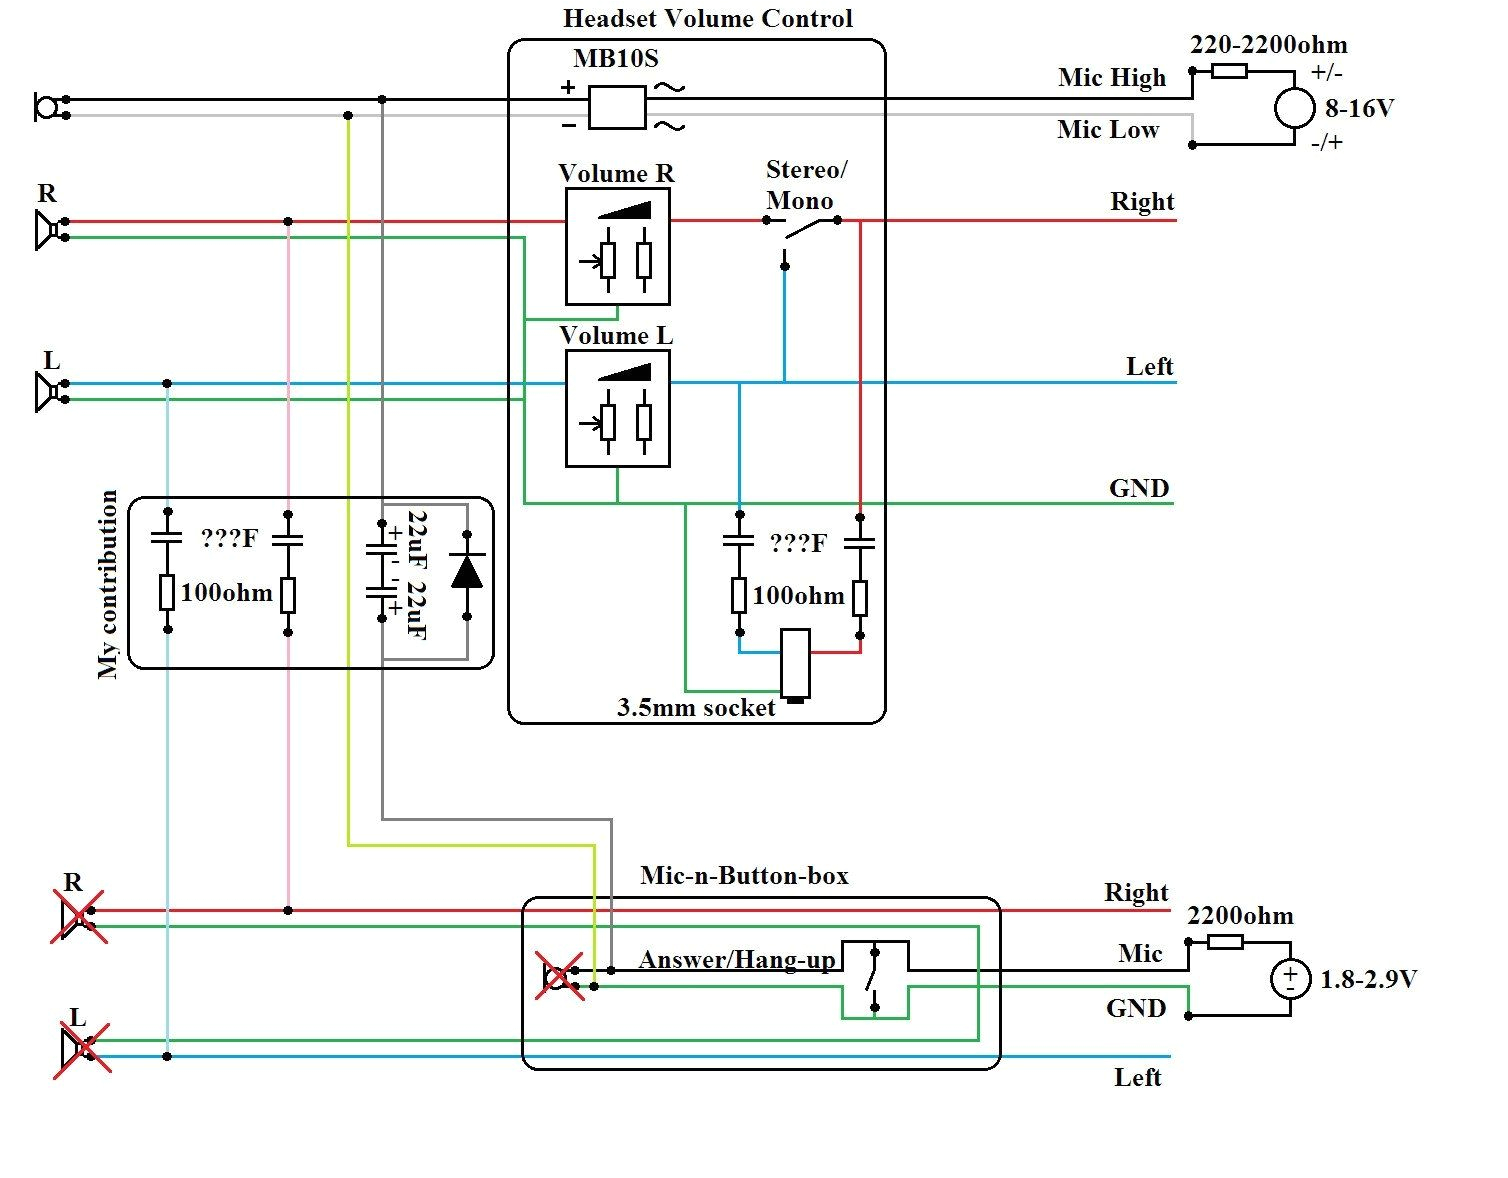 david clark headset wiring diagram database